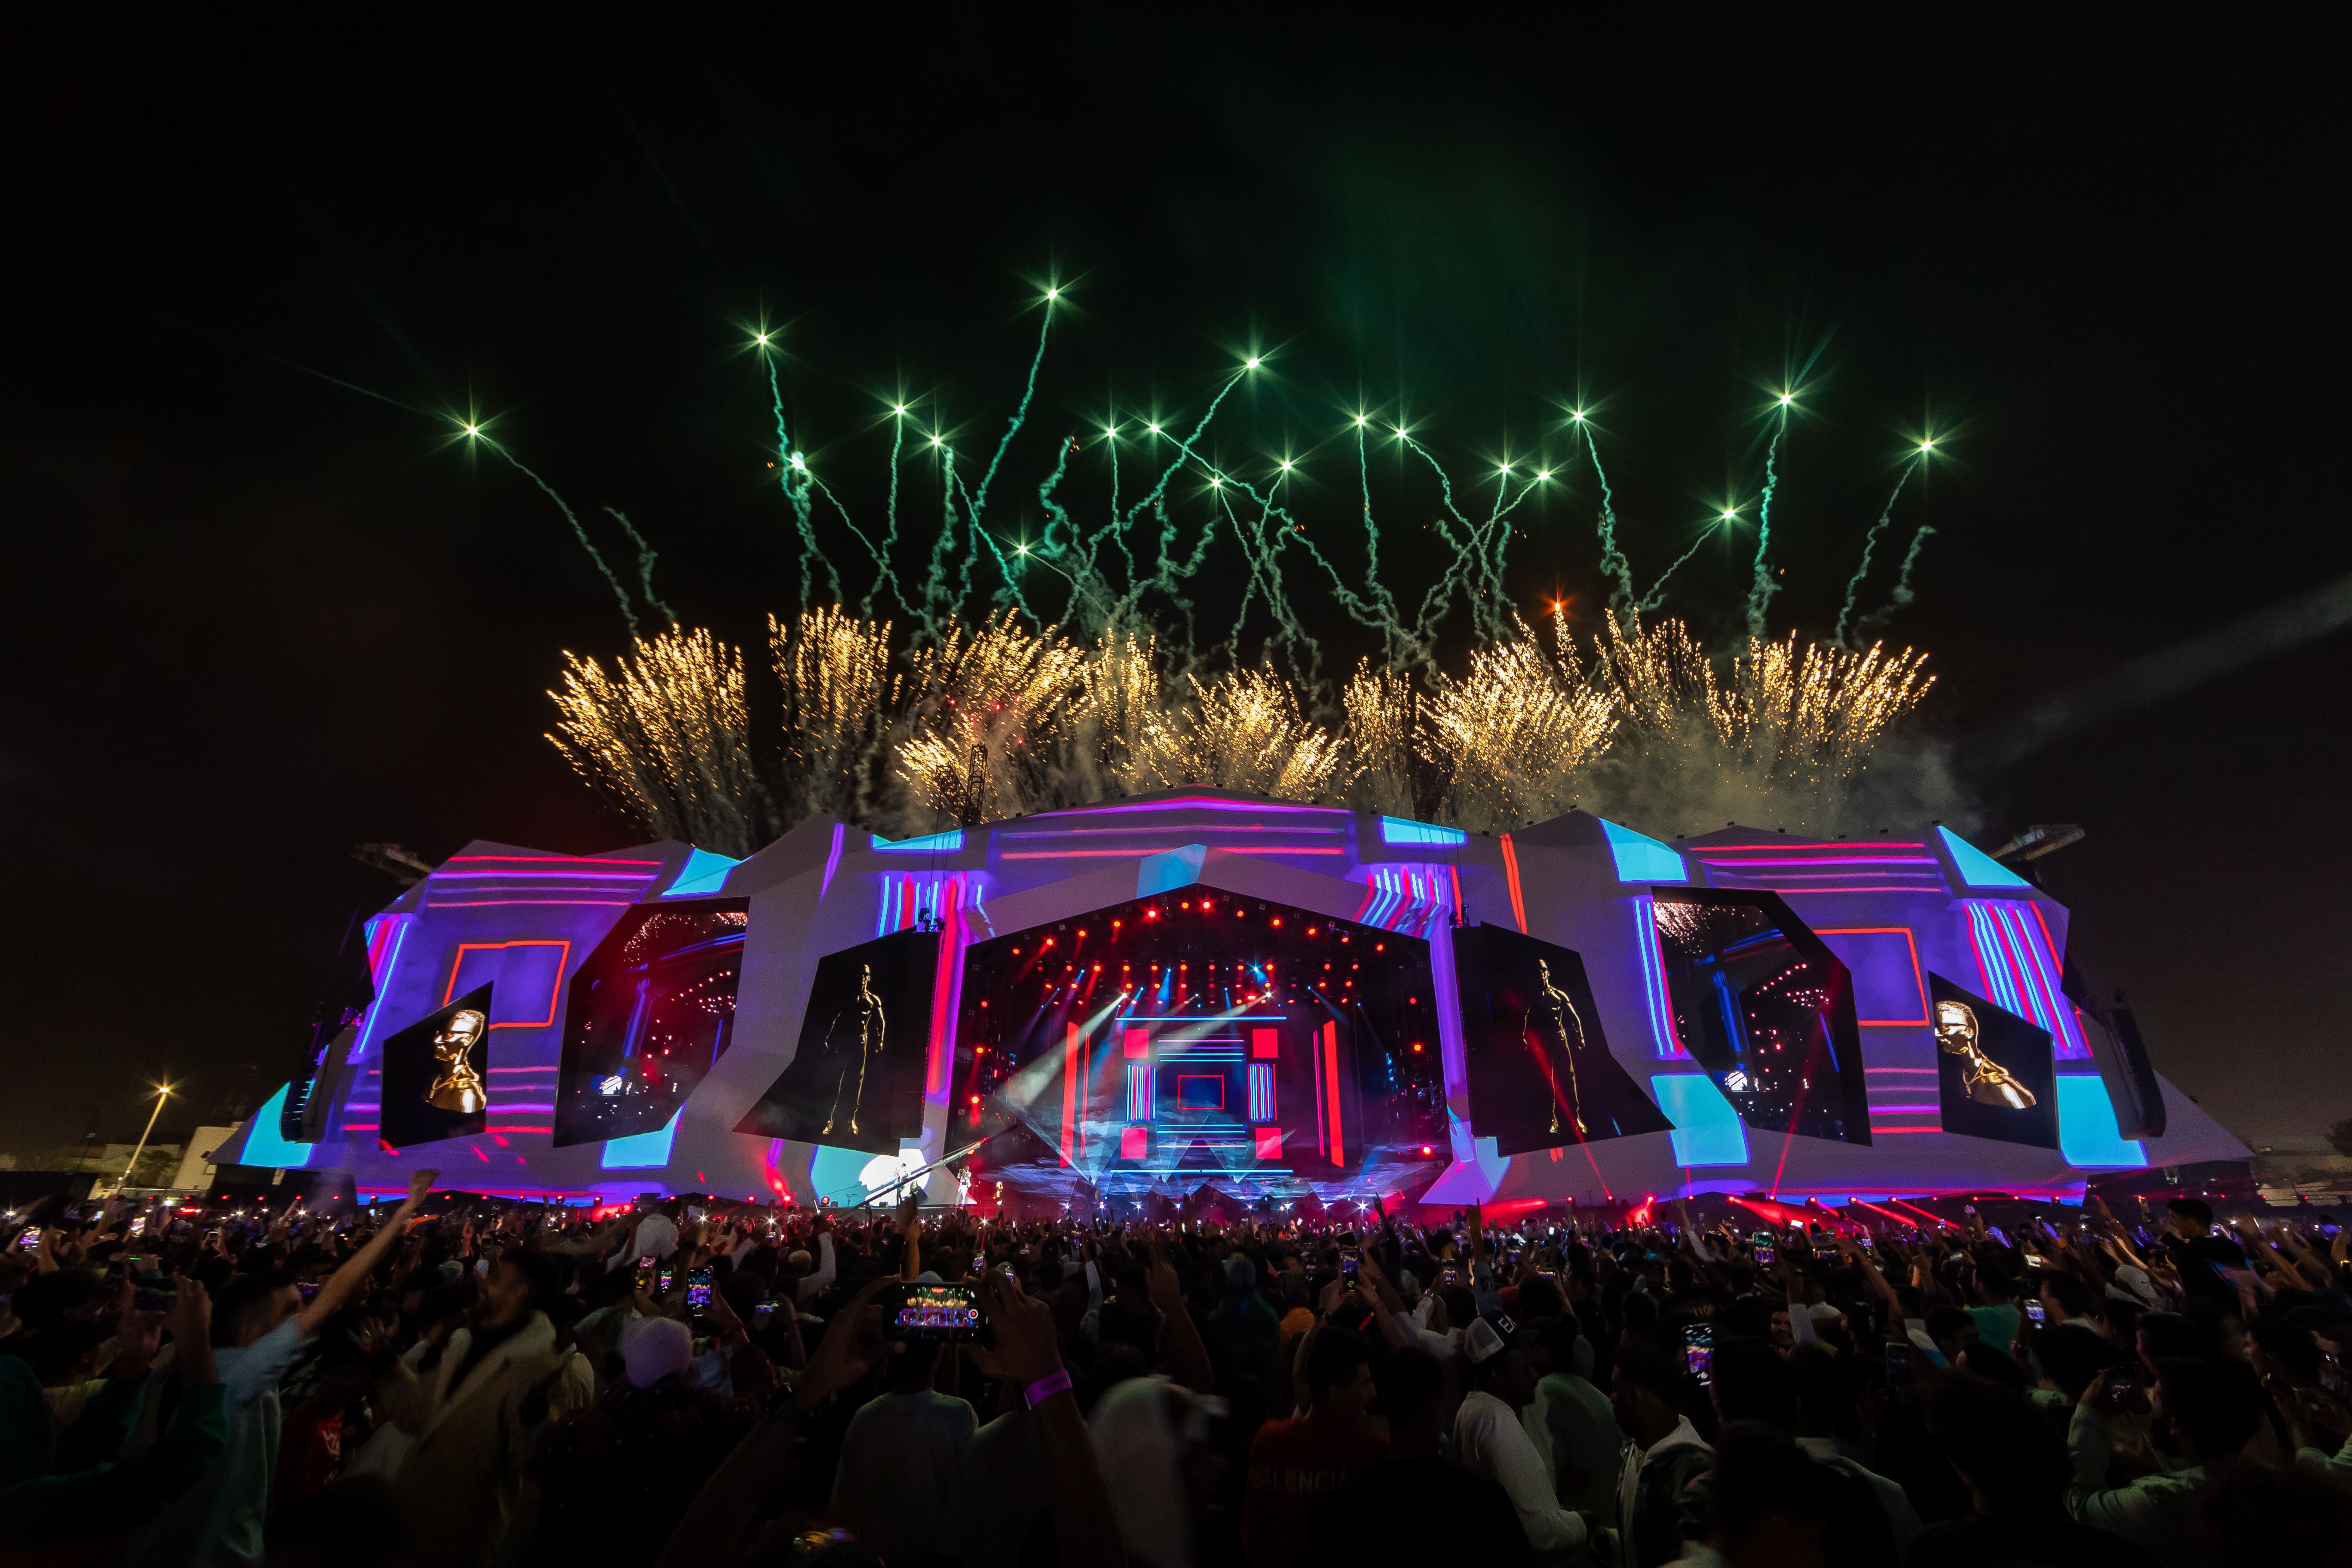 تعاون " جائزة السعودية الكبرى stc للفورمولا 1" مع "إكس بي لمستقبل الموسيقى" يشعل مسابقة "إكس بيرفورم"